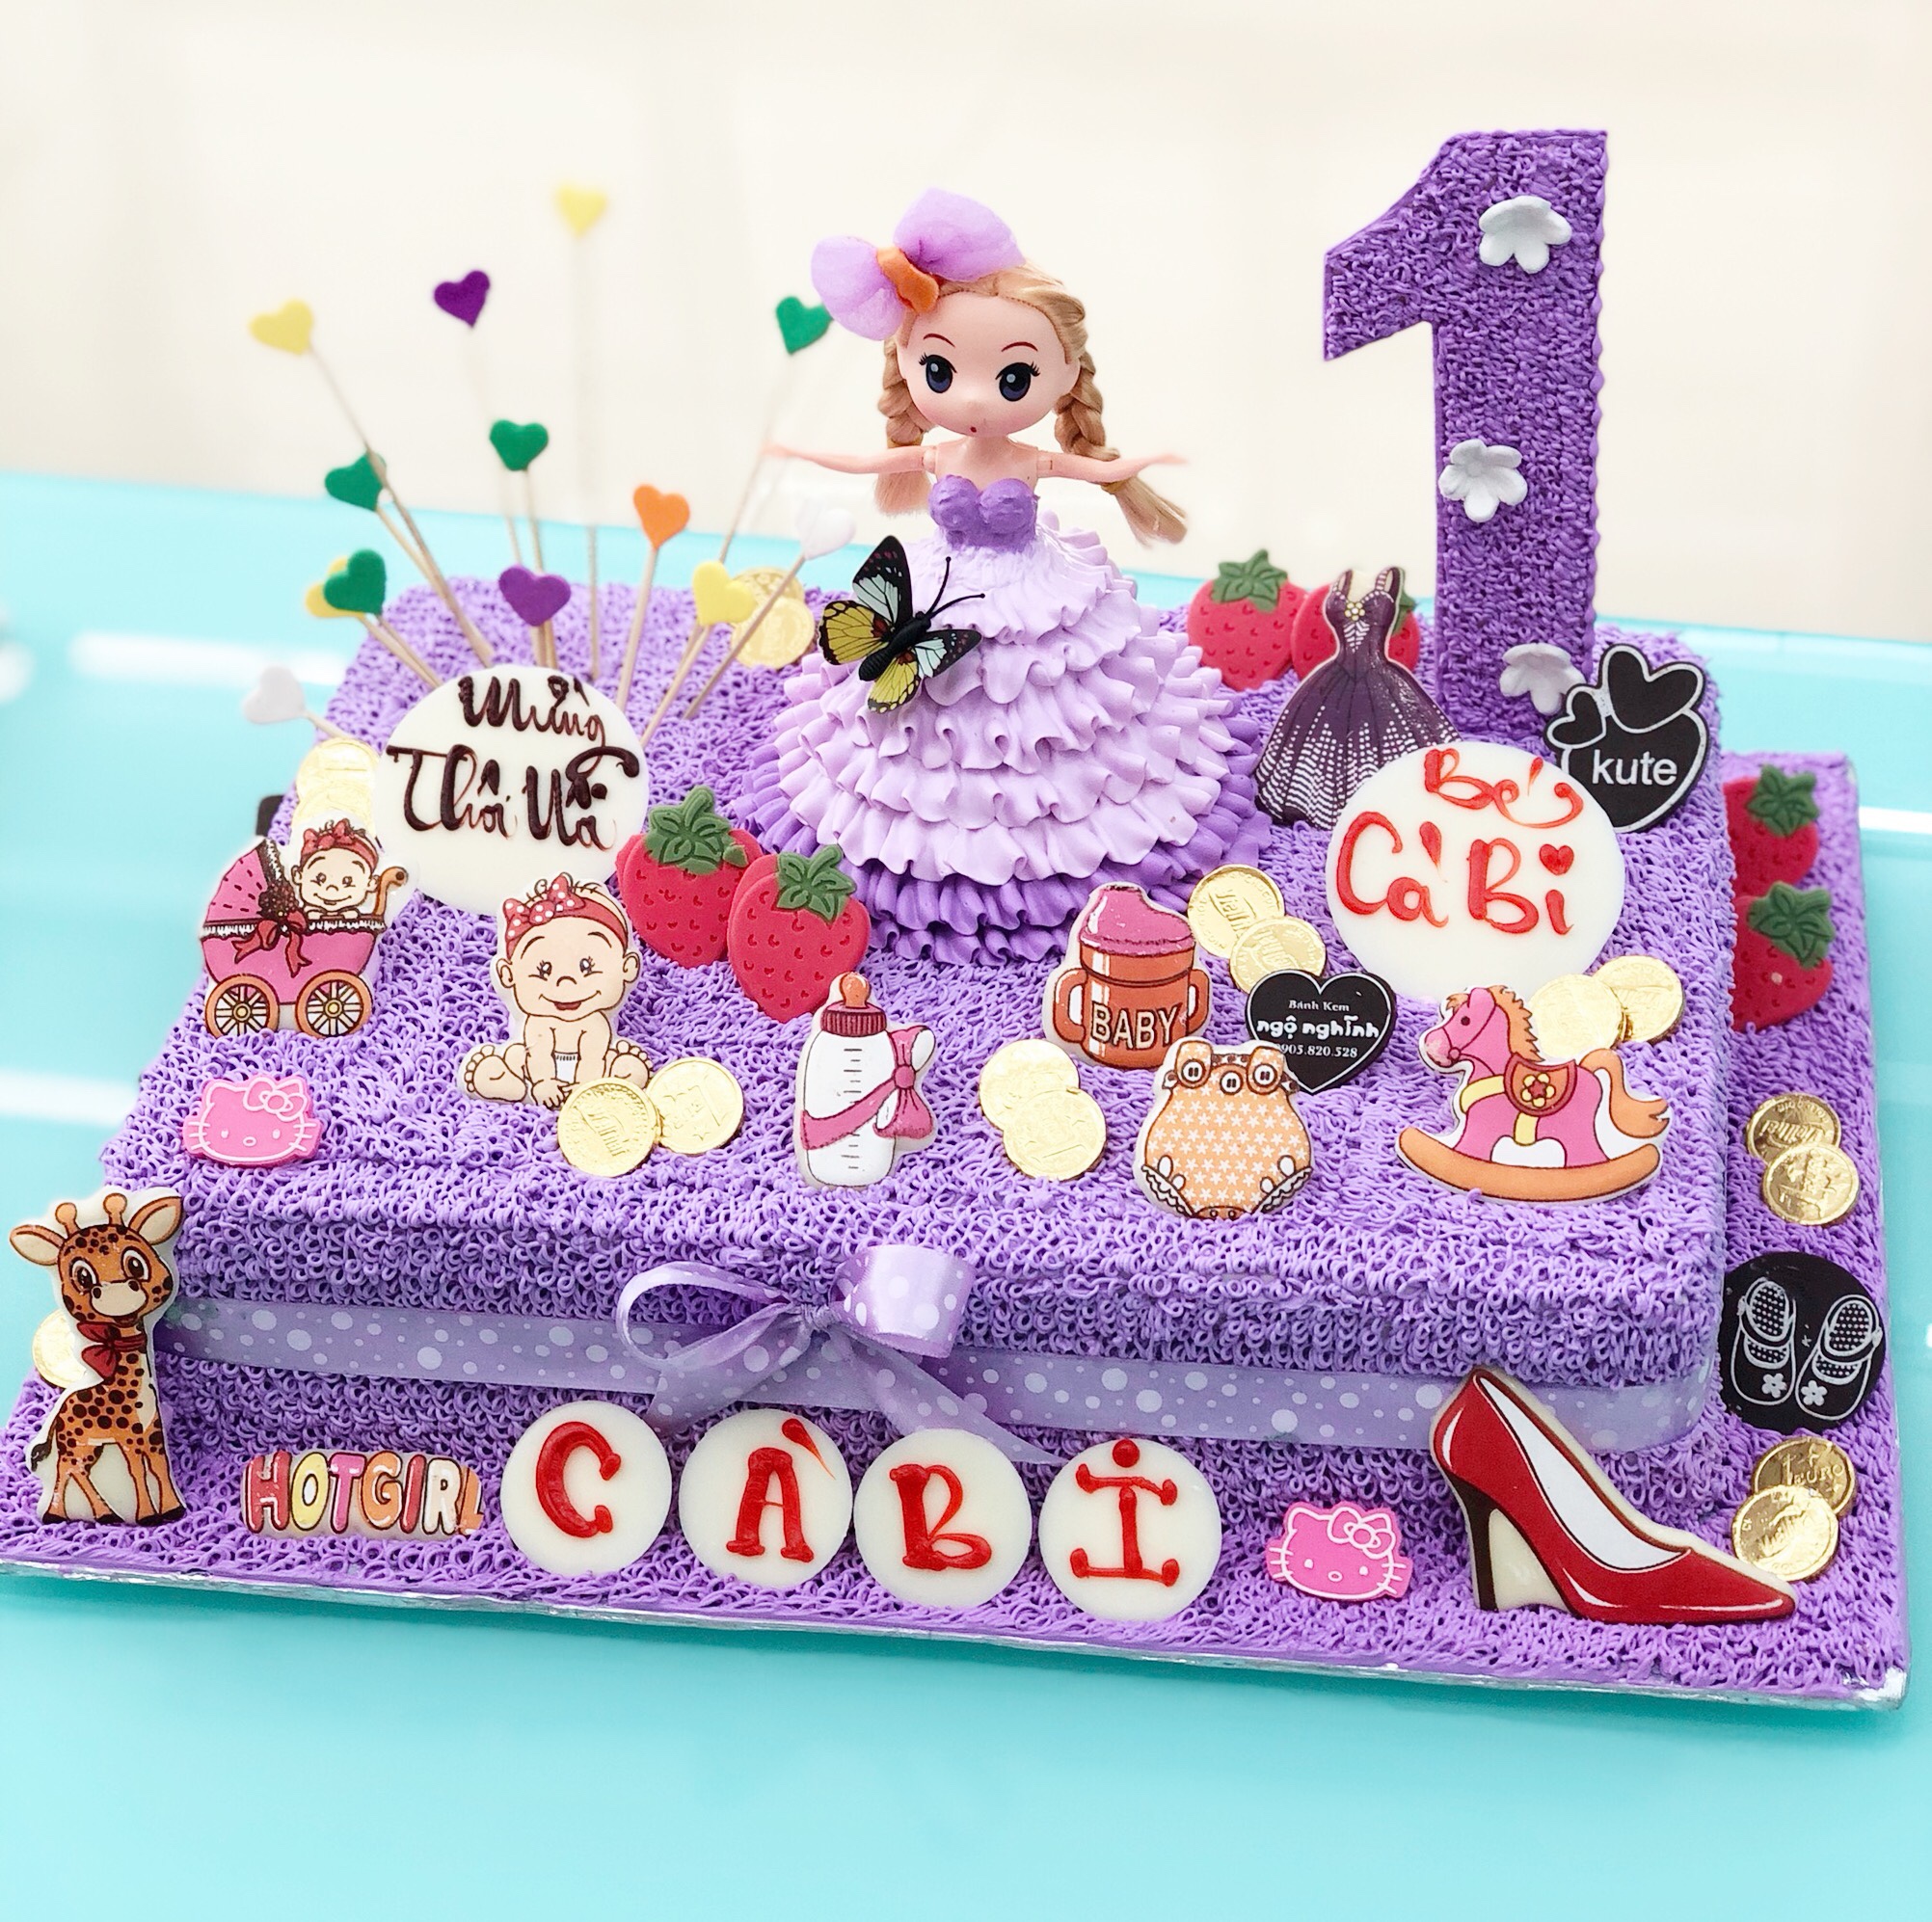 Bánh sinh nhật công chúa chibi màu tím là một lựa chọn tuyệt vời để tôn vinh ngày sinh nhật của bạn. Với thiết kế những chiếc bánh hình chibi và màu tím nổi bật cùng họa tiết công chúa, sự đặc biệt của ngày sinh nhật sẽ được thể hiện rõ ràng. Nhấp chuột để tìm hiểu thêm về những mẫu bánh sinh nhật công chúa chibi màu tím đáng yêu nhất.